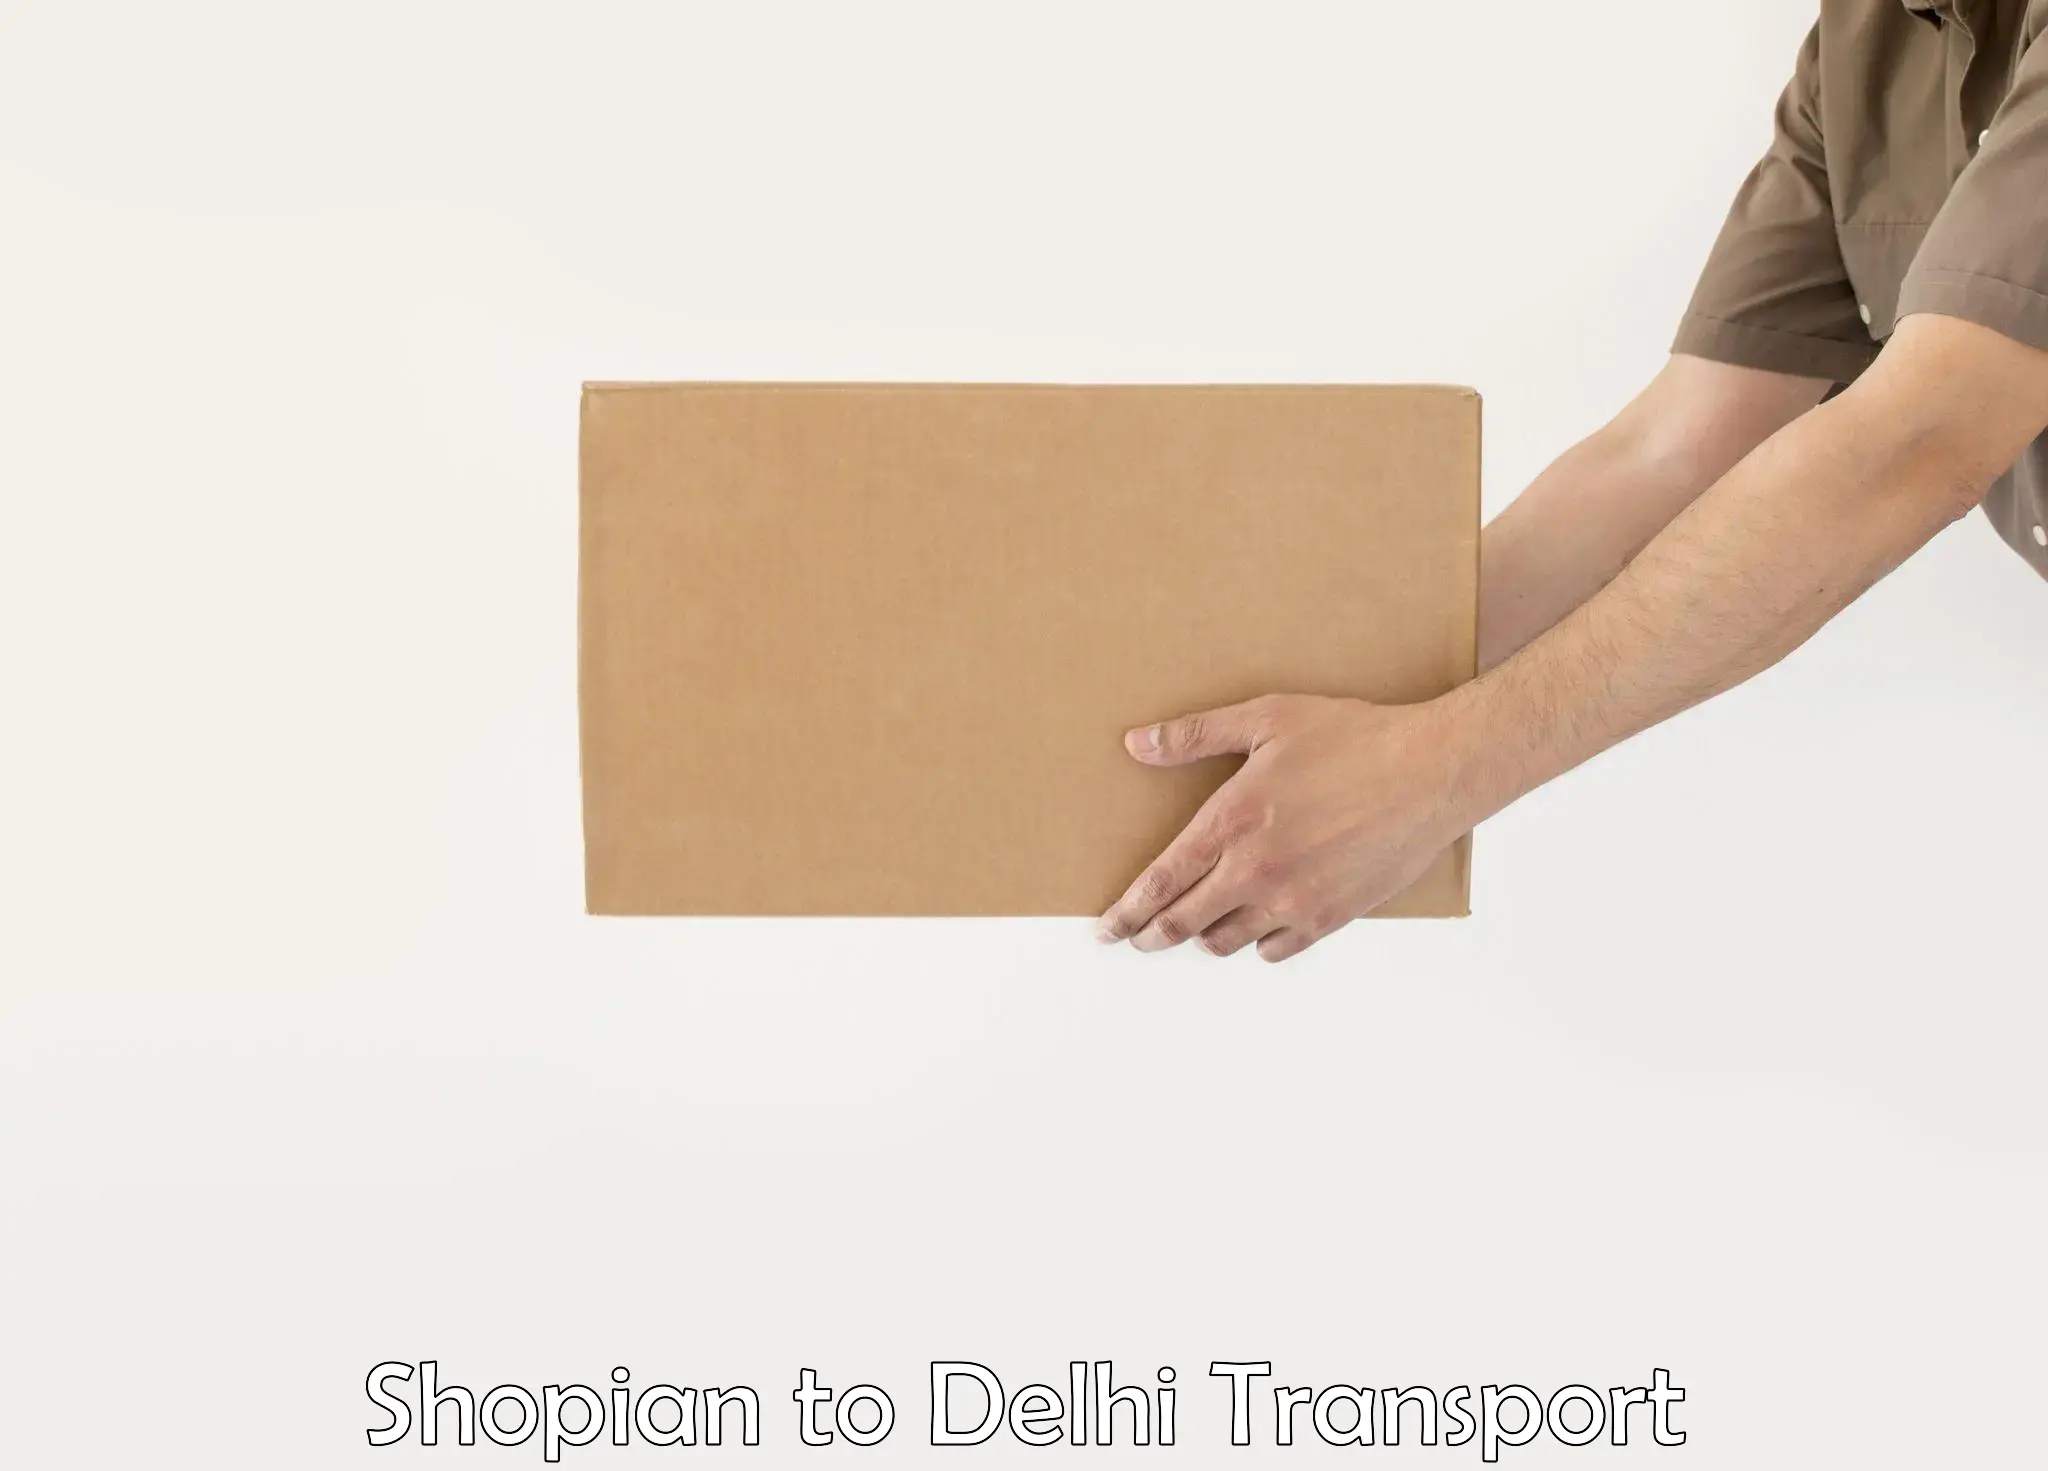 Online transport service Shopian to IIT Delhi